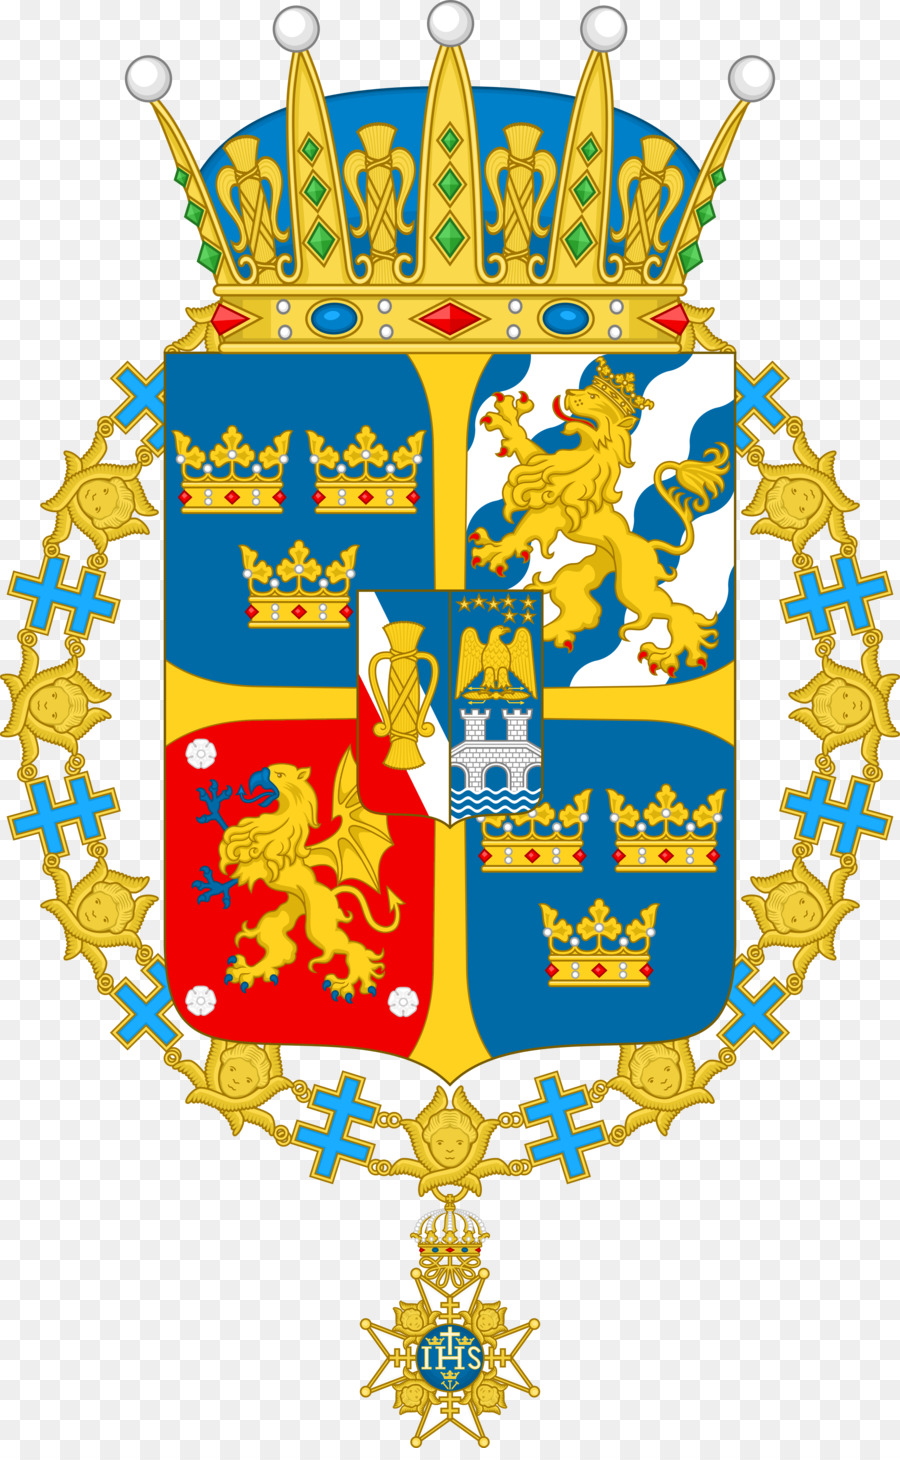 Hoàng tử xứ Wales, Hoàng tử thứ Tự của các Sọc huy hiệu của Thụy điển - những người khác